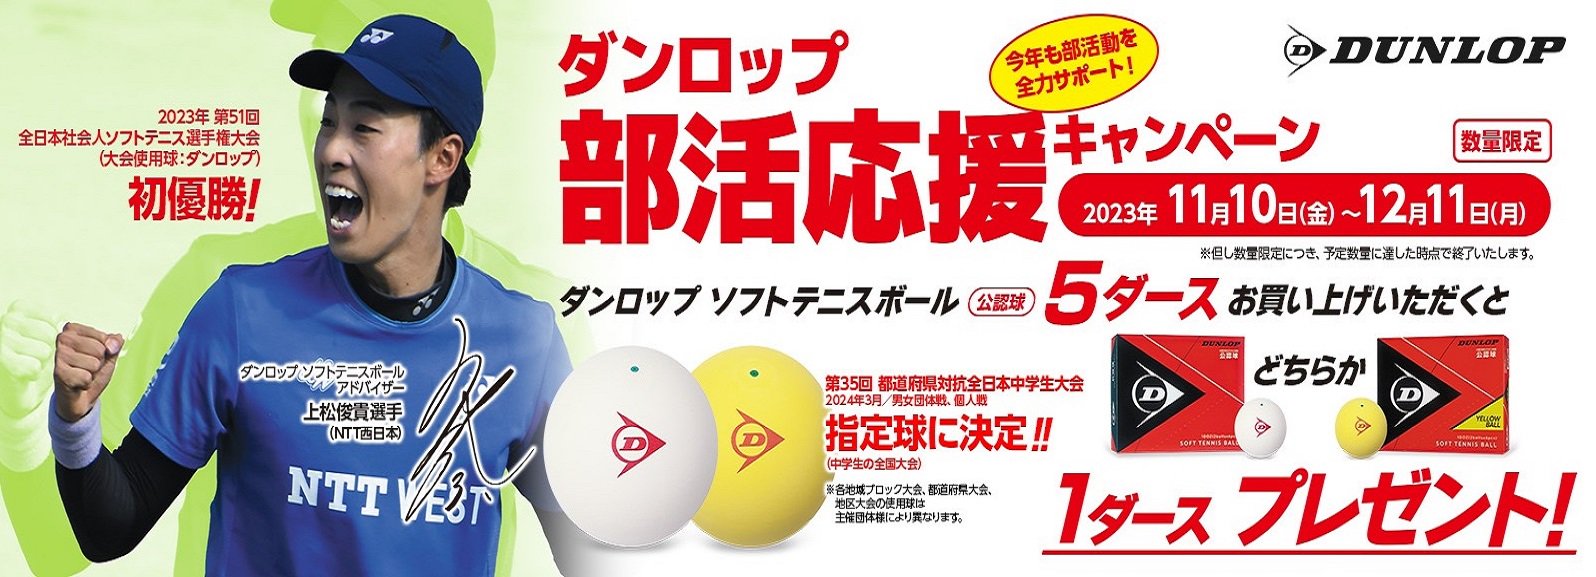 ソフトテニスボール等の各種軟式テニス用品、スポーツ器具の通販はTEAM303